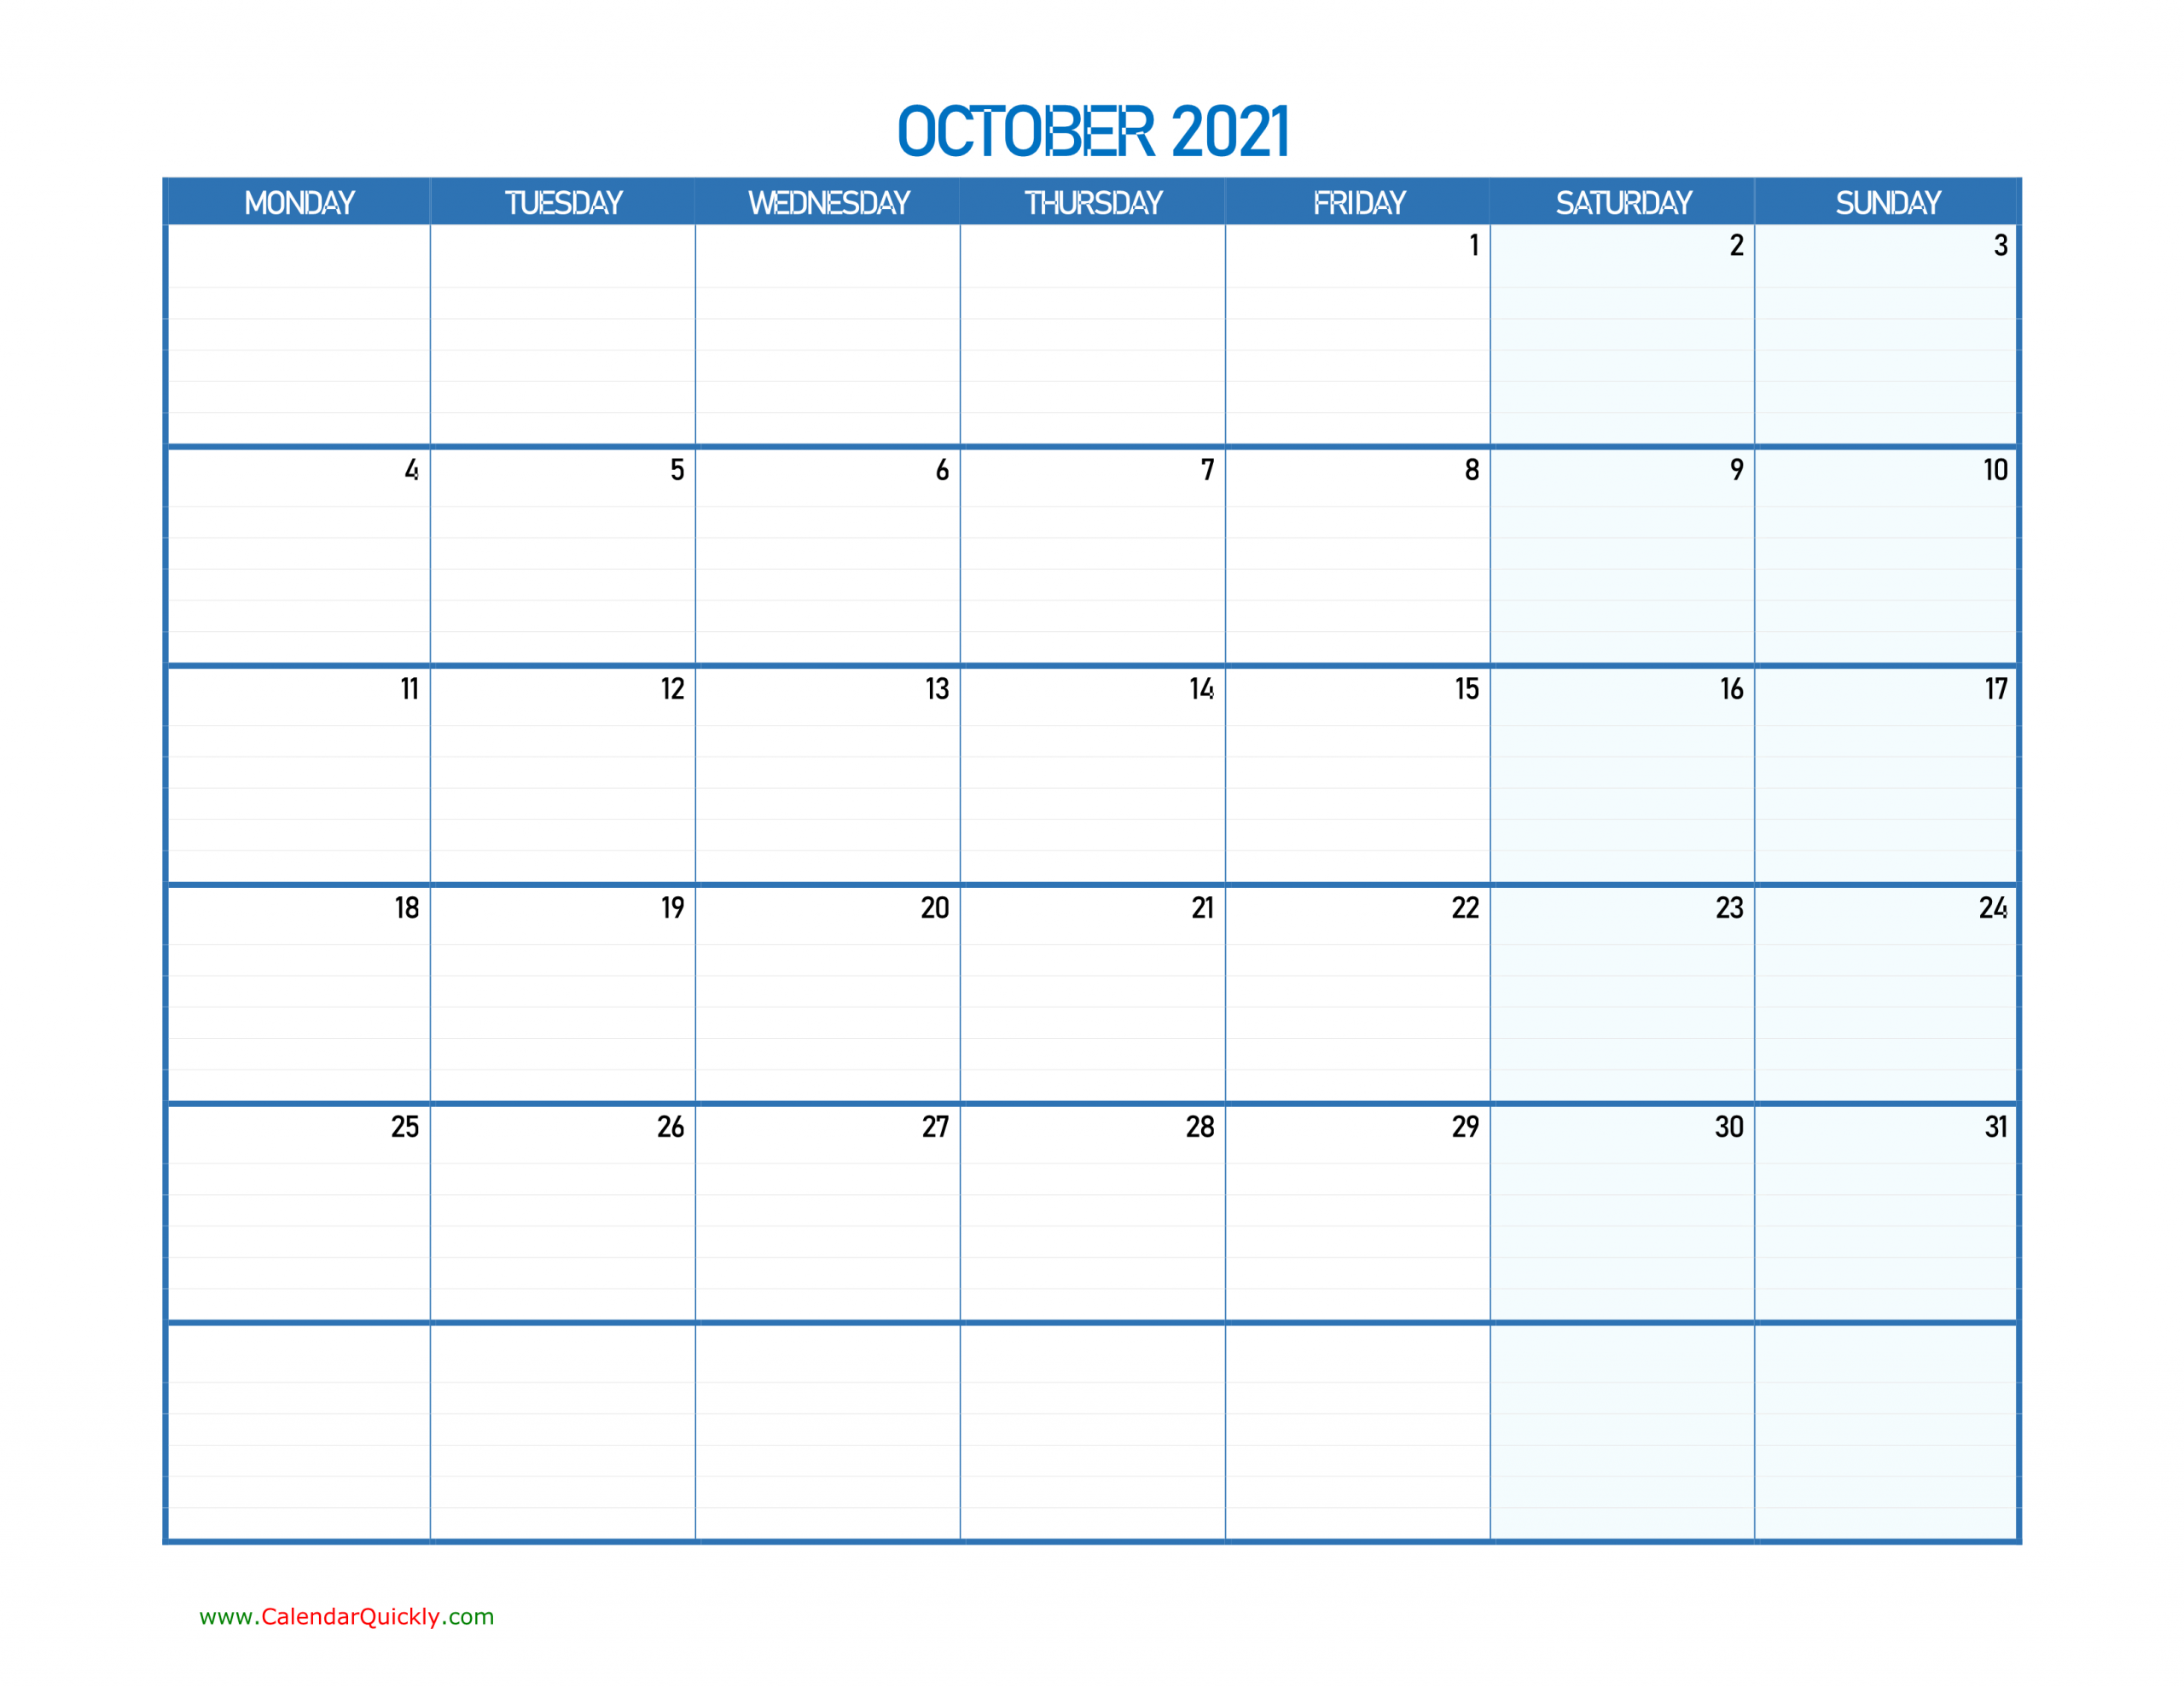 October Monday 2021 Blank Calendar | Calendar Quickly